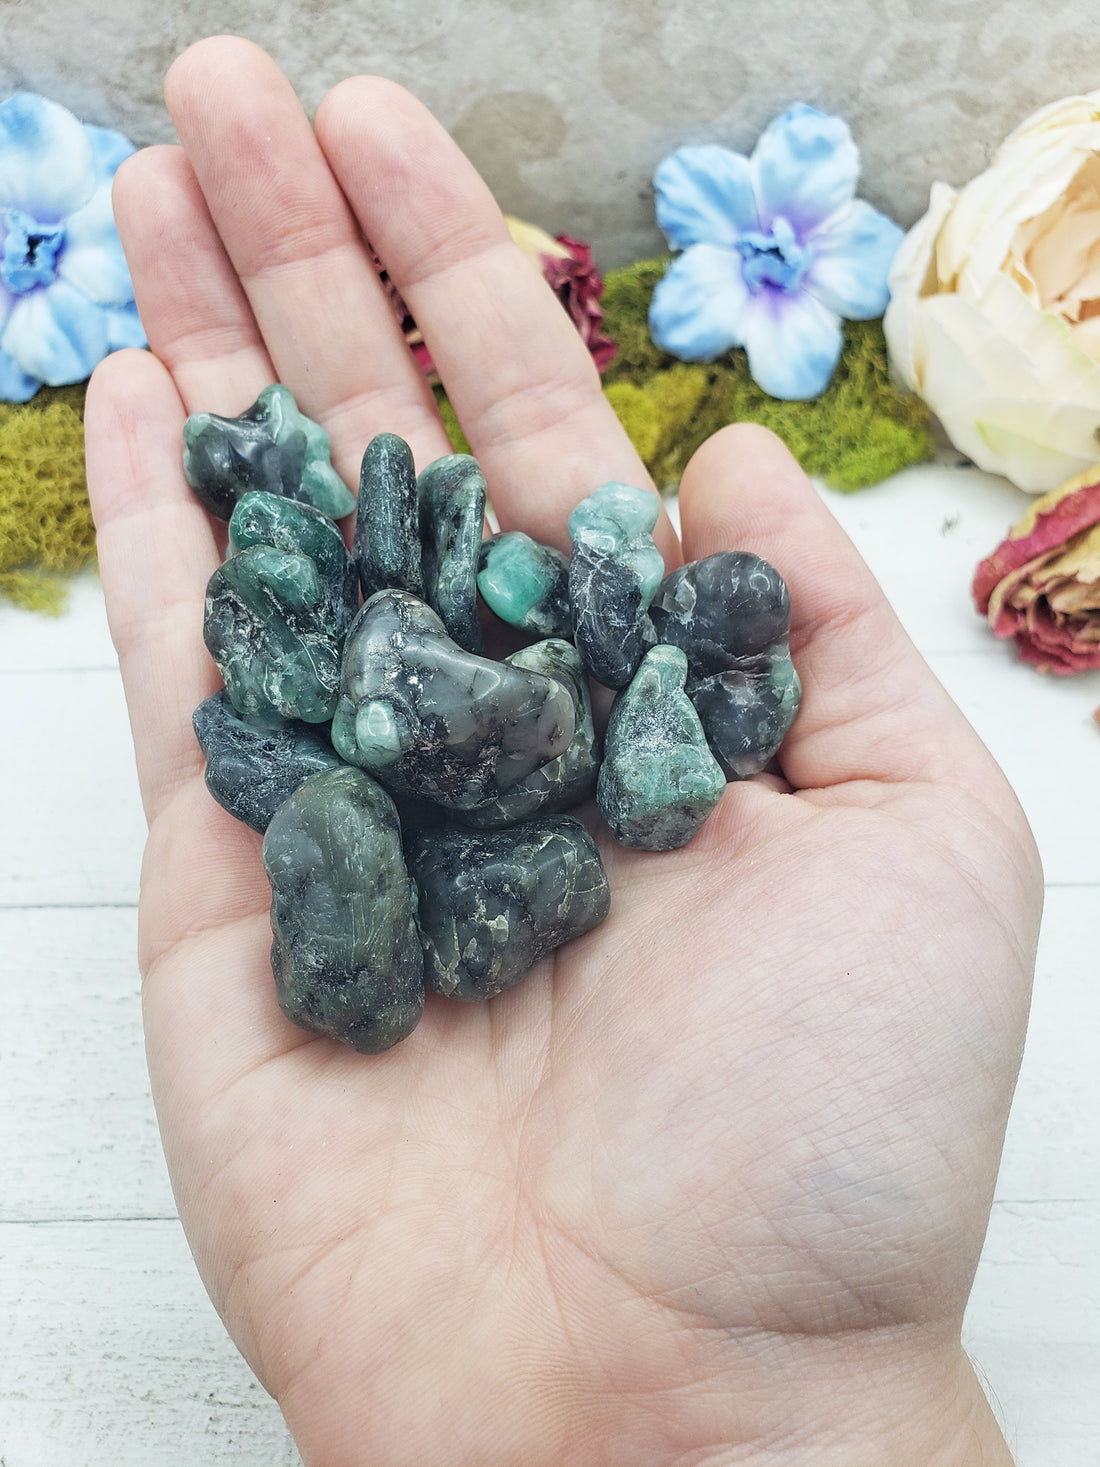 emerald in matrix stones in hand